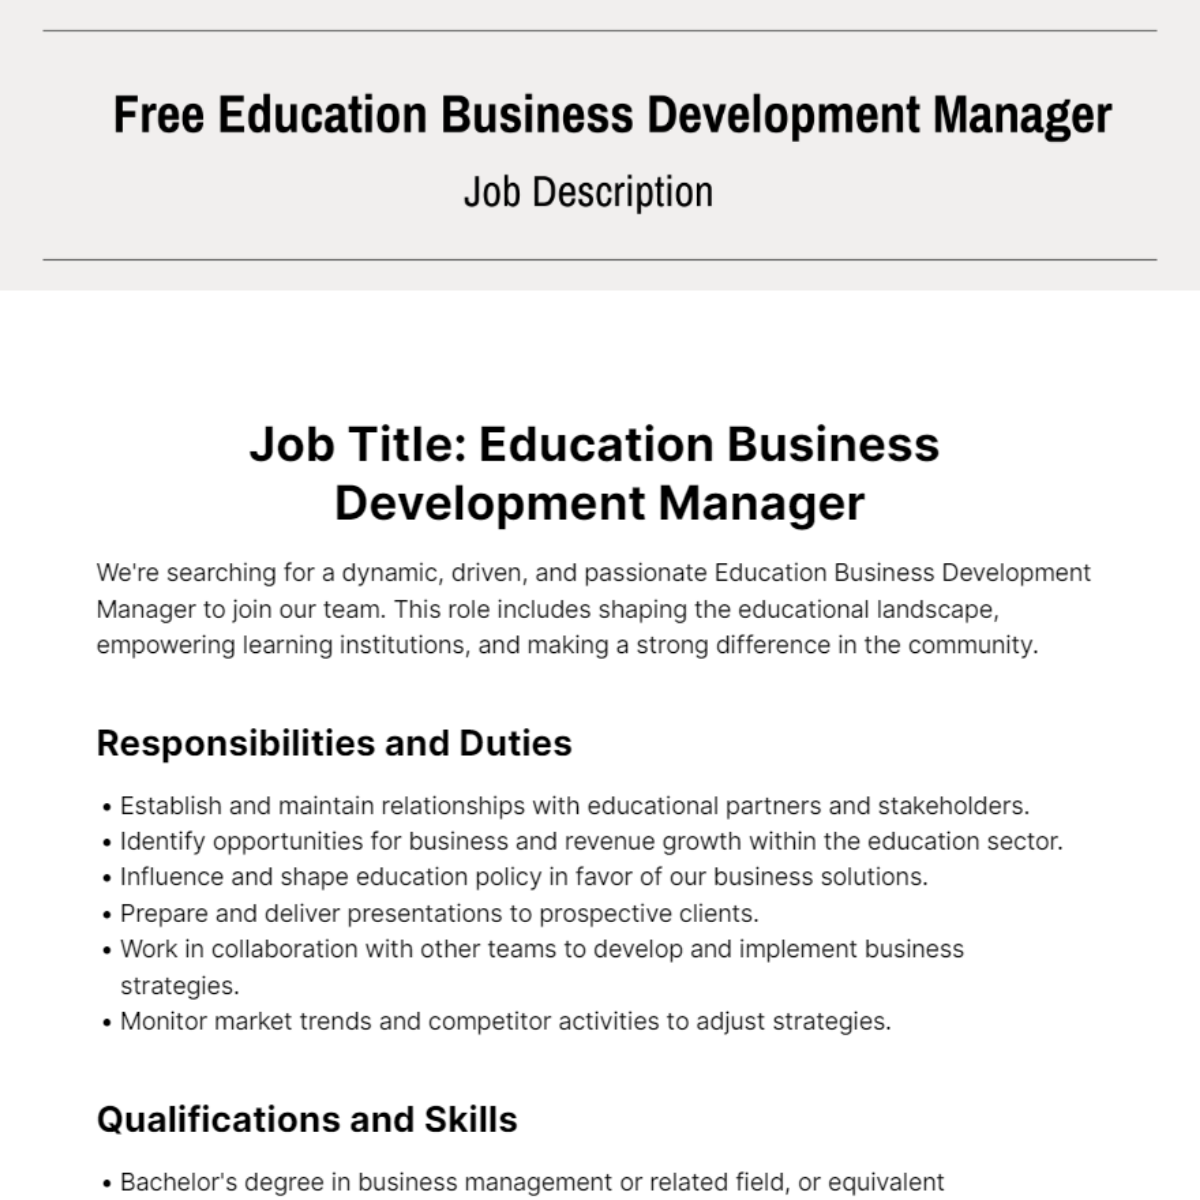 Education Business Development Manager Job Description Template